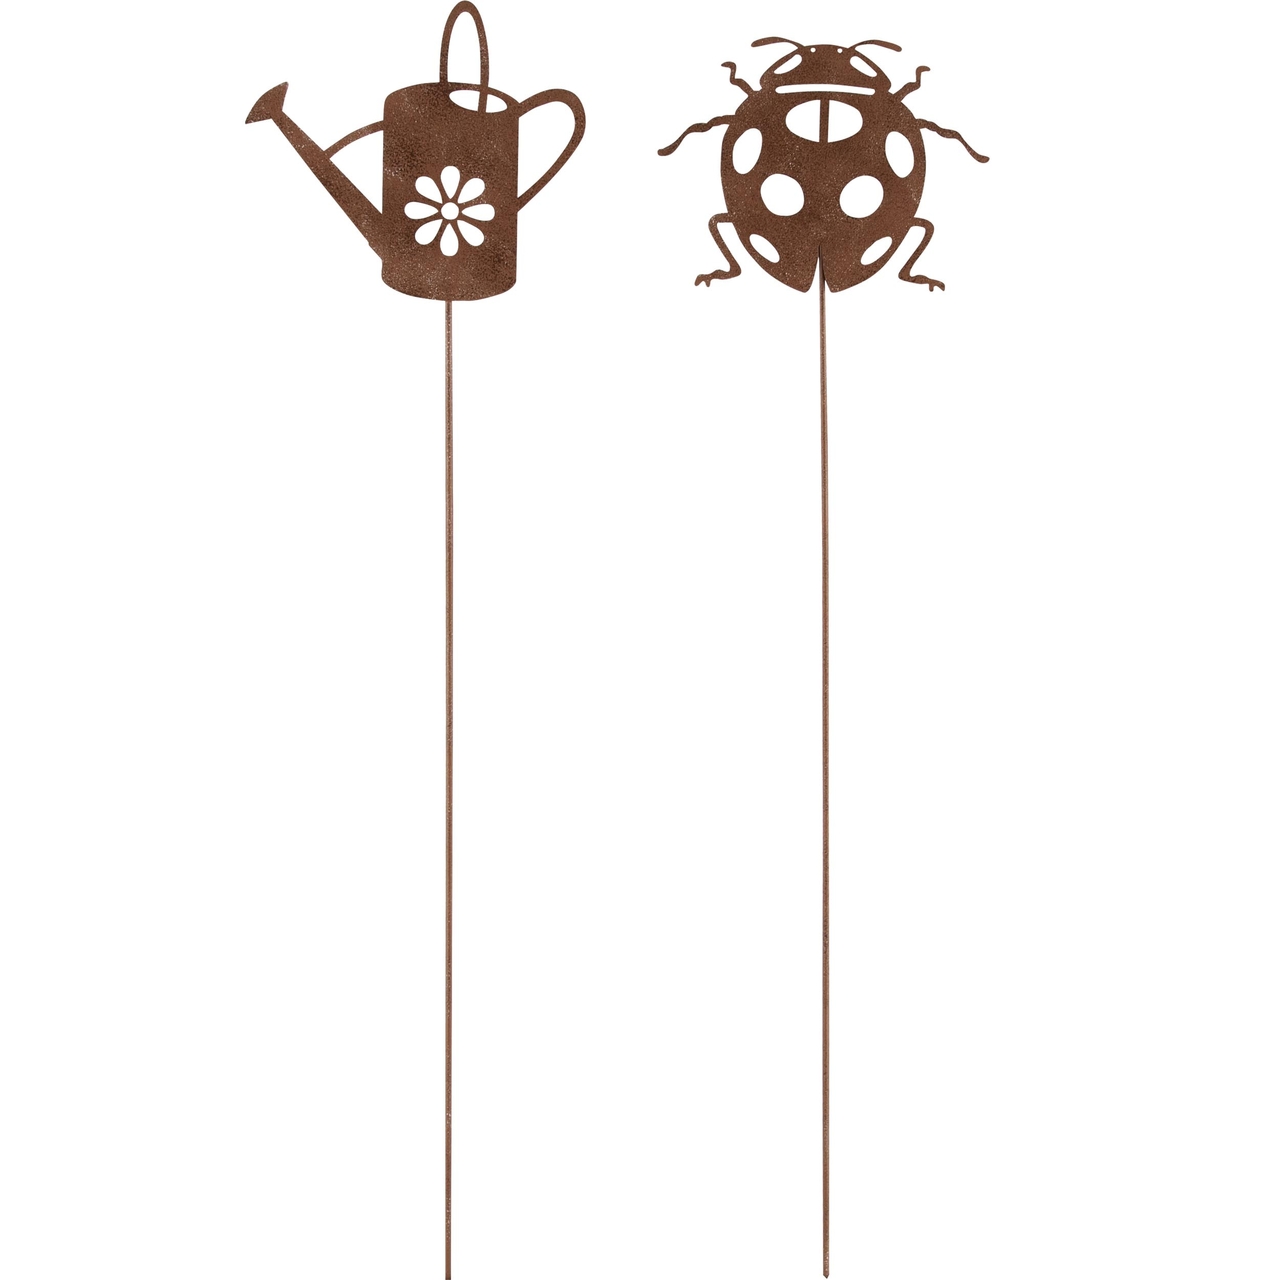 Dekoratief | Stick m/gieter/lieveheersbeestje, metaal, roest, 45x11cm, set van 2 stuks | A240549